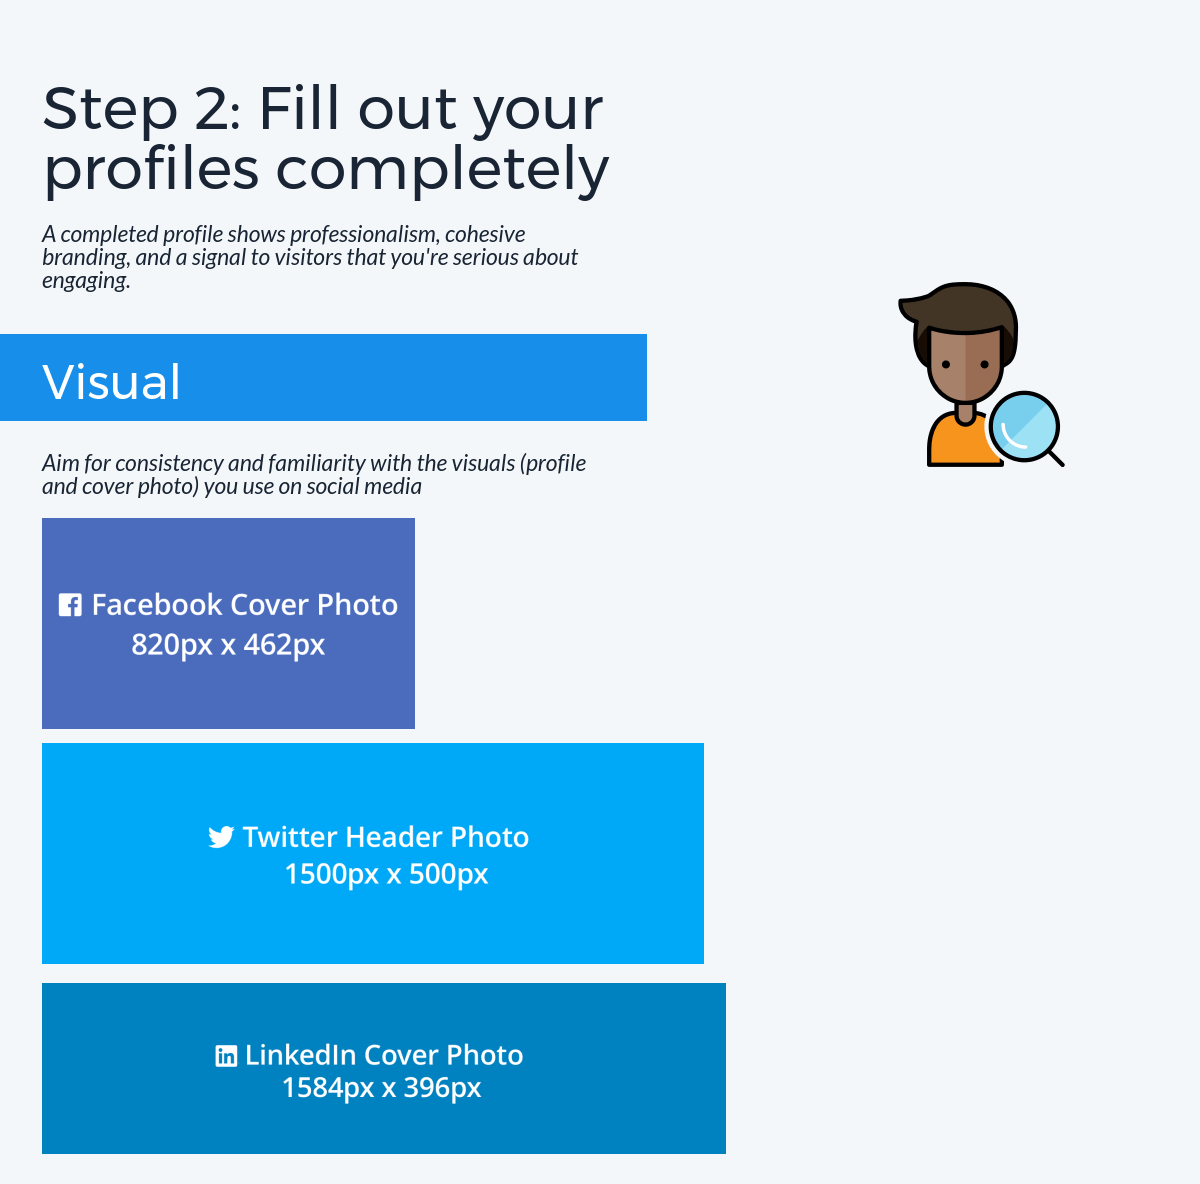 Pas 2: empleneu els perfils completament